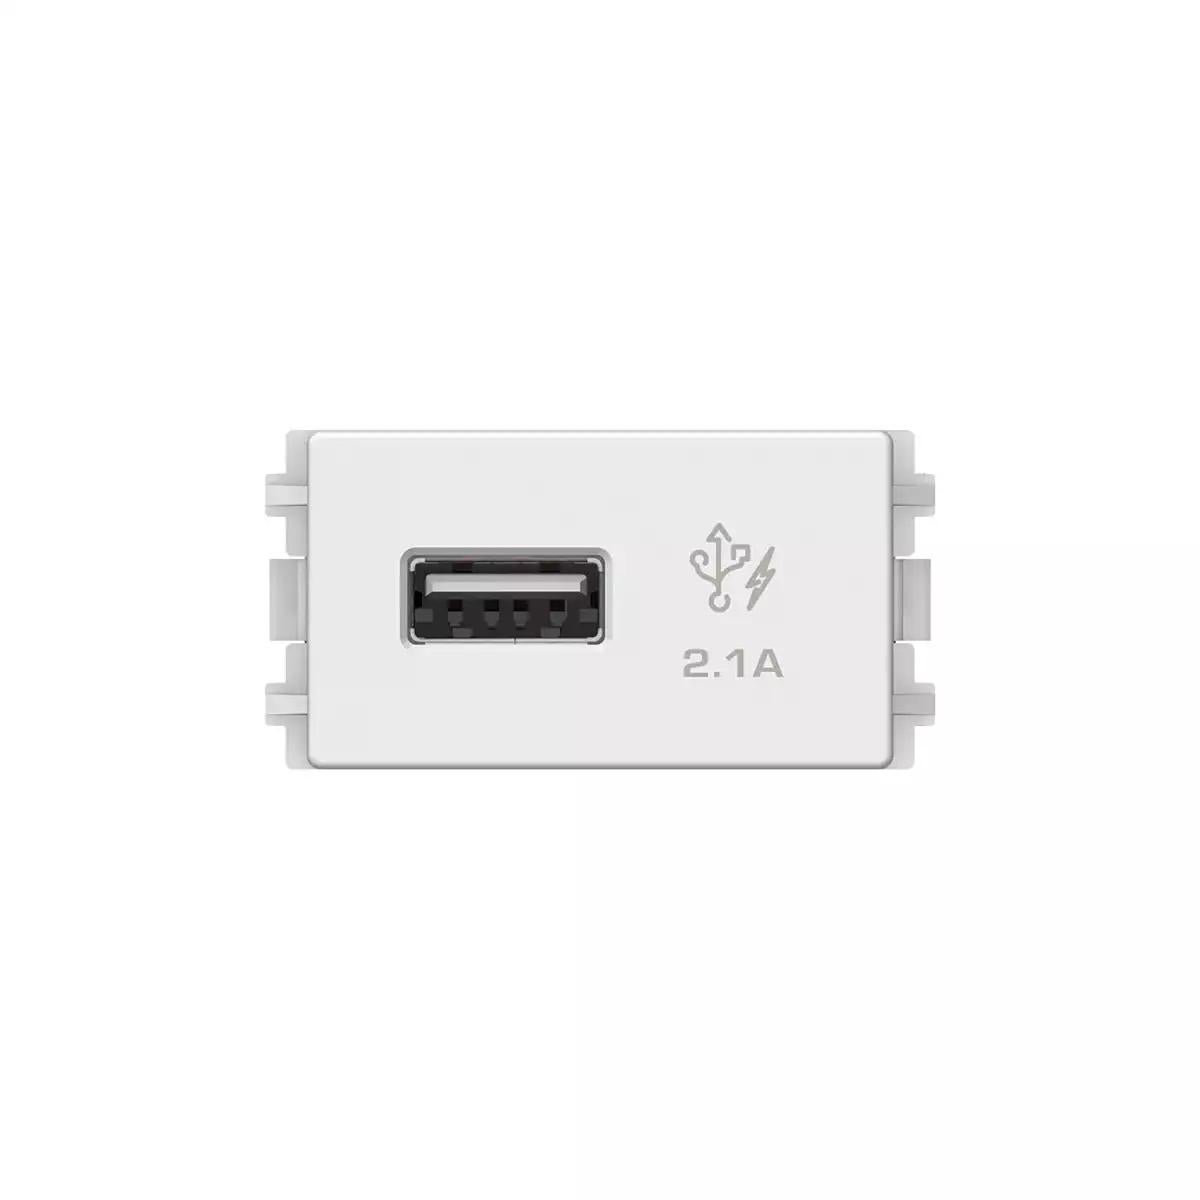 1 Port 2.1A USB, 1 Module Size, White